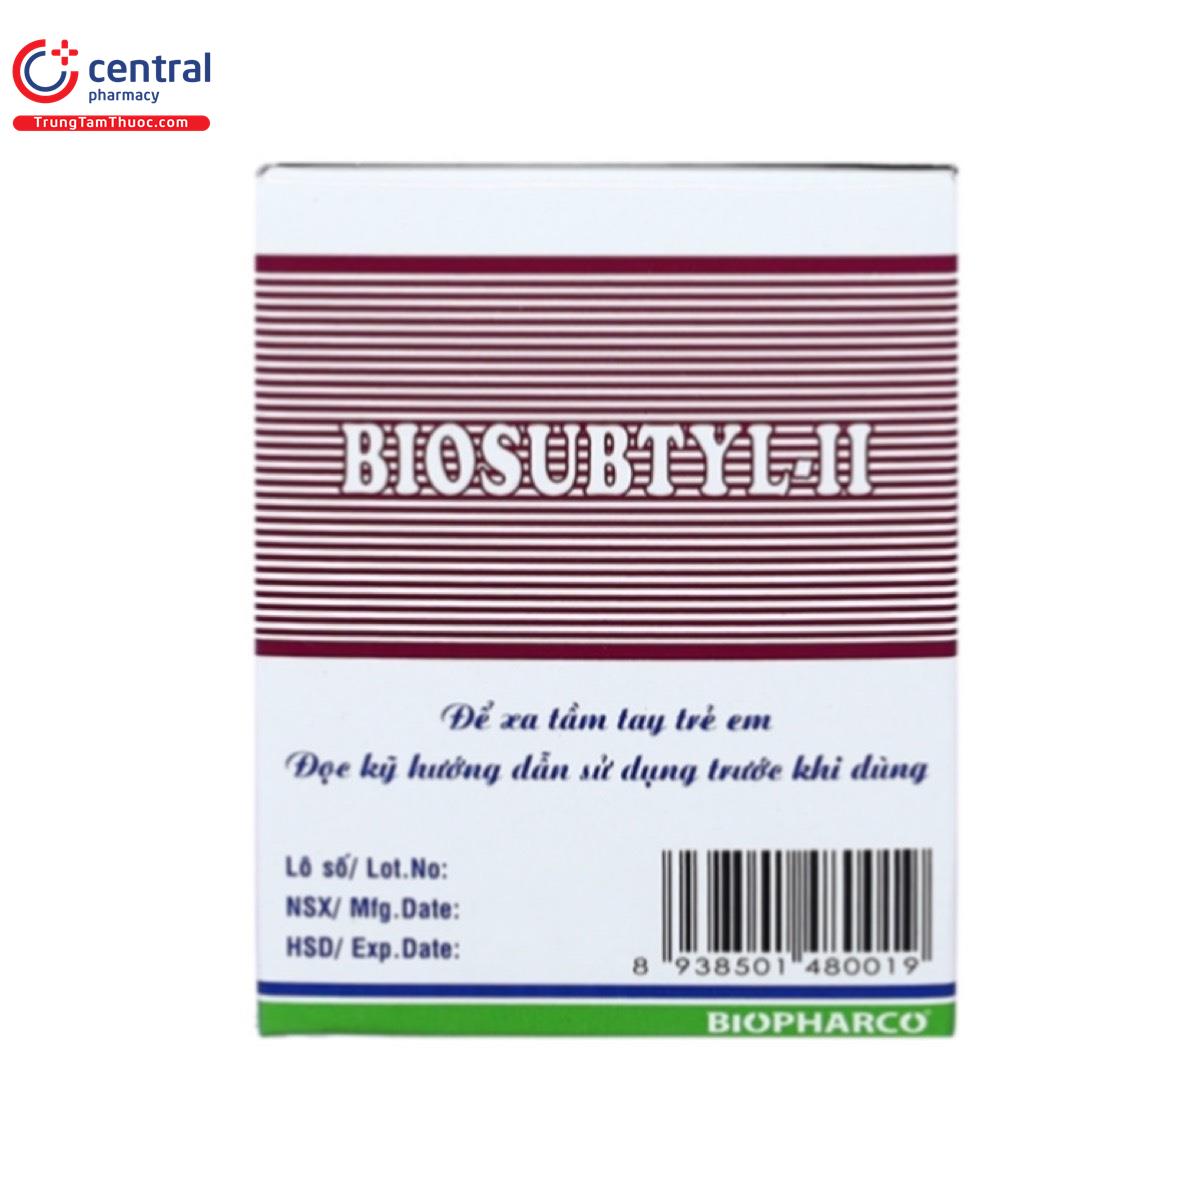 biosubtyl ii 8 R6045